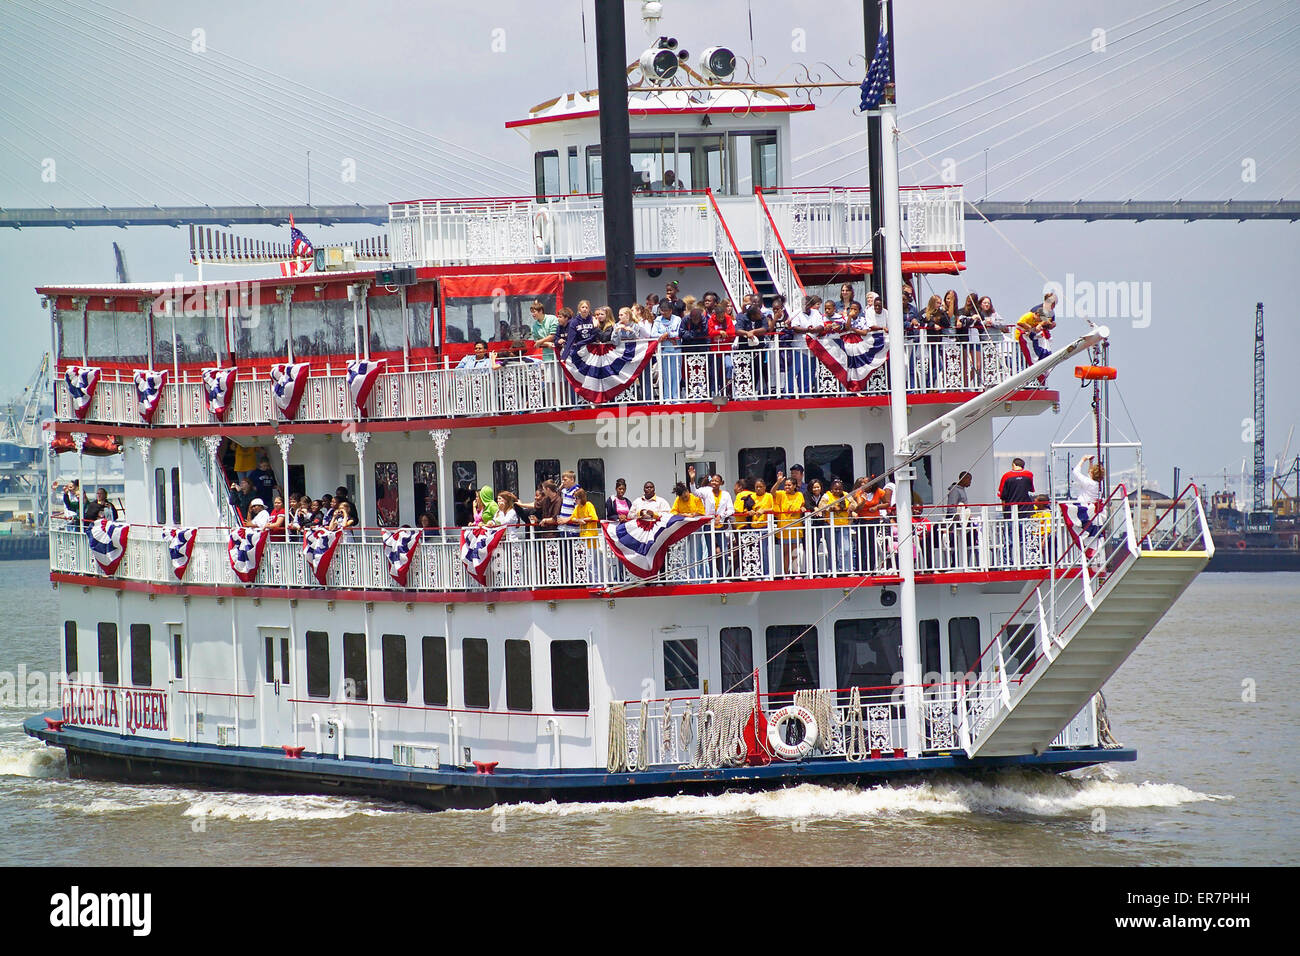 Los alumnos obtener una lección de historia local a bordo de un antiguo barco que está explorando el Río Savannah en Georgia, EEUU. Foto de stock